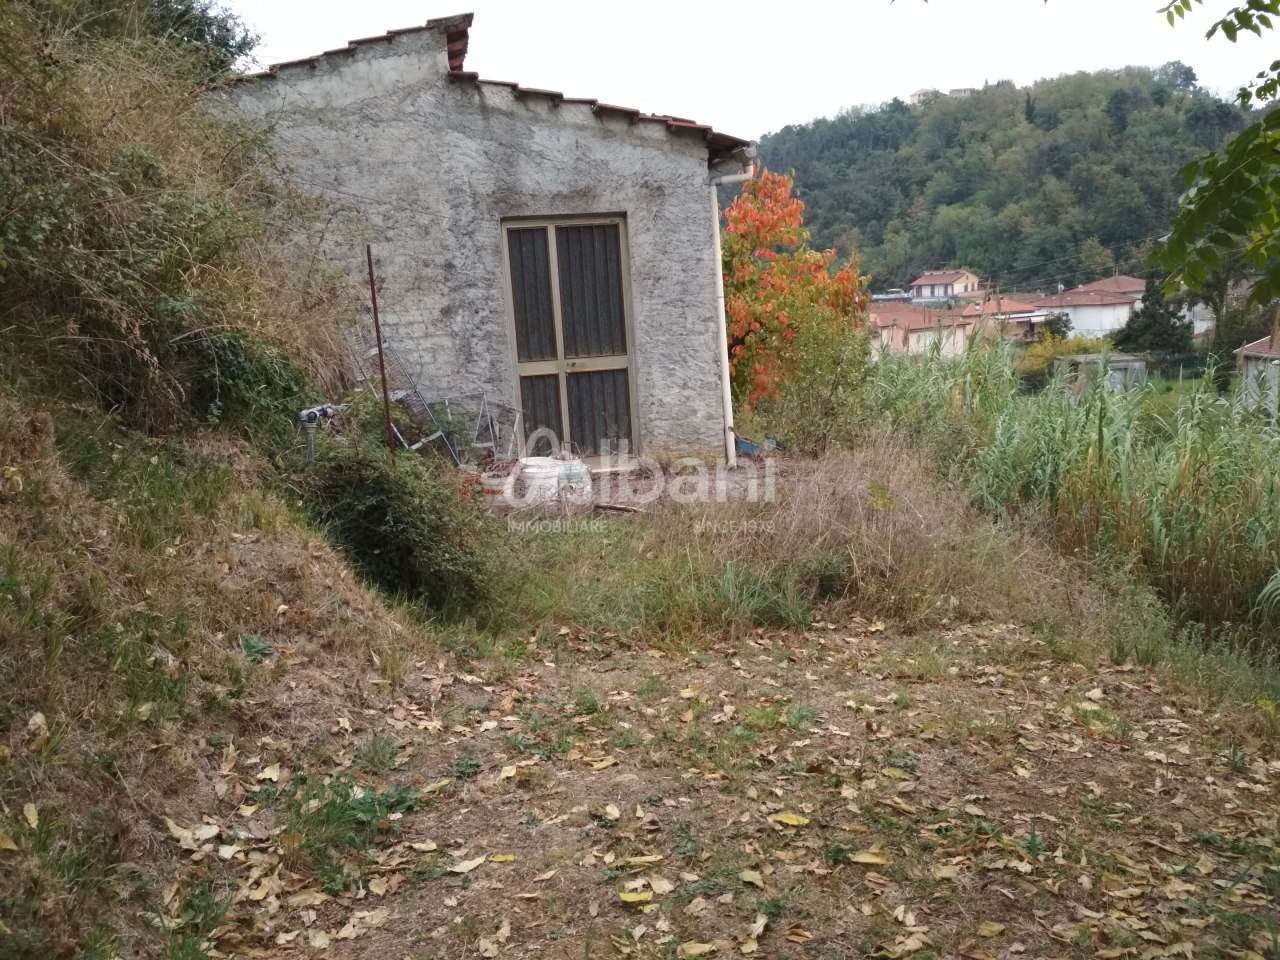 Terreno Agricolo in vendita a Vezzano Ligure, 1 locali, prezzo € 32.000 | PortaleAgenzieImmobiliari.it